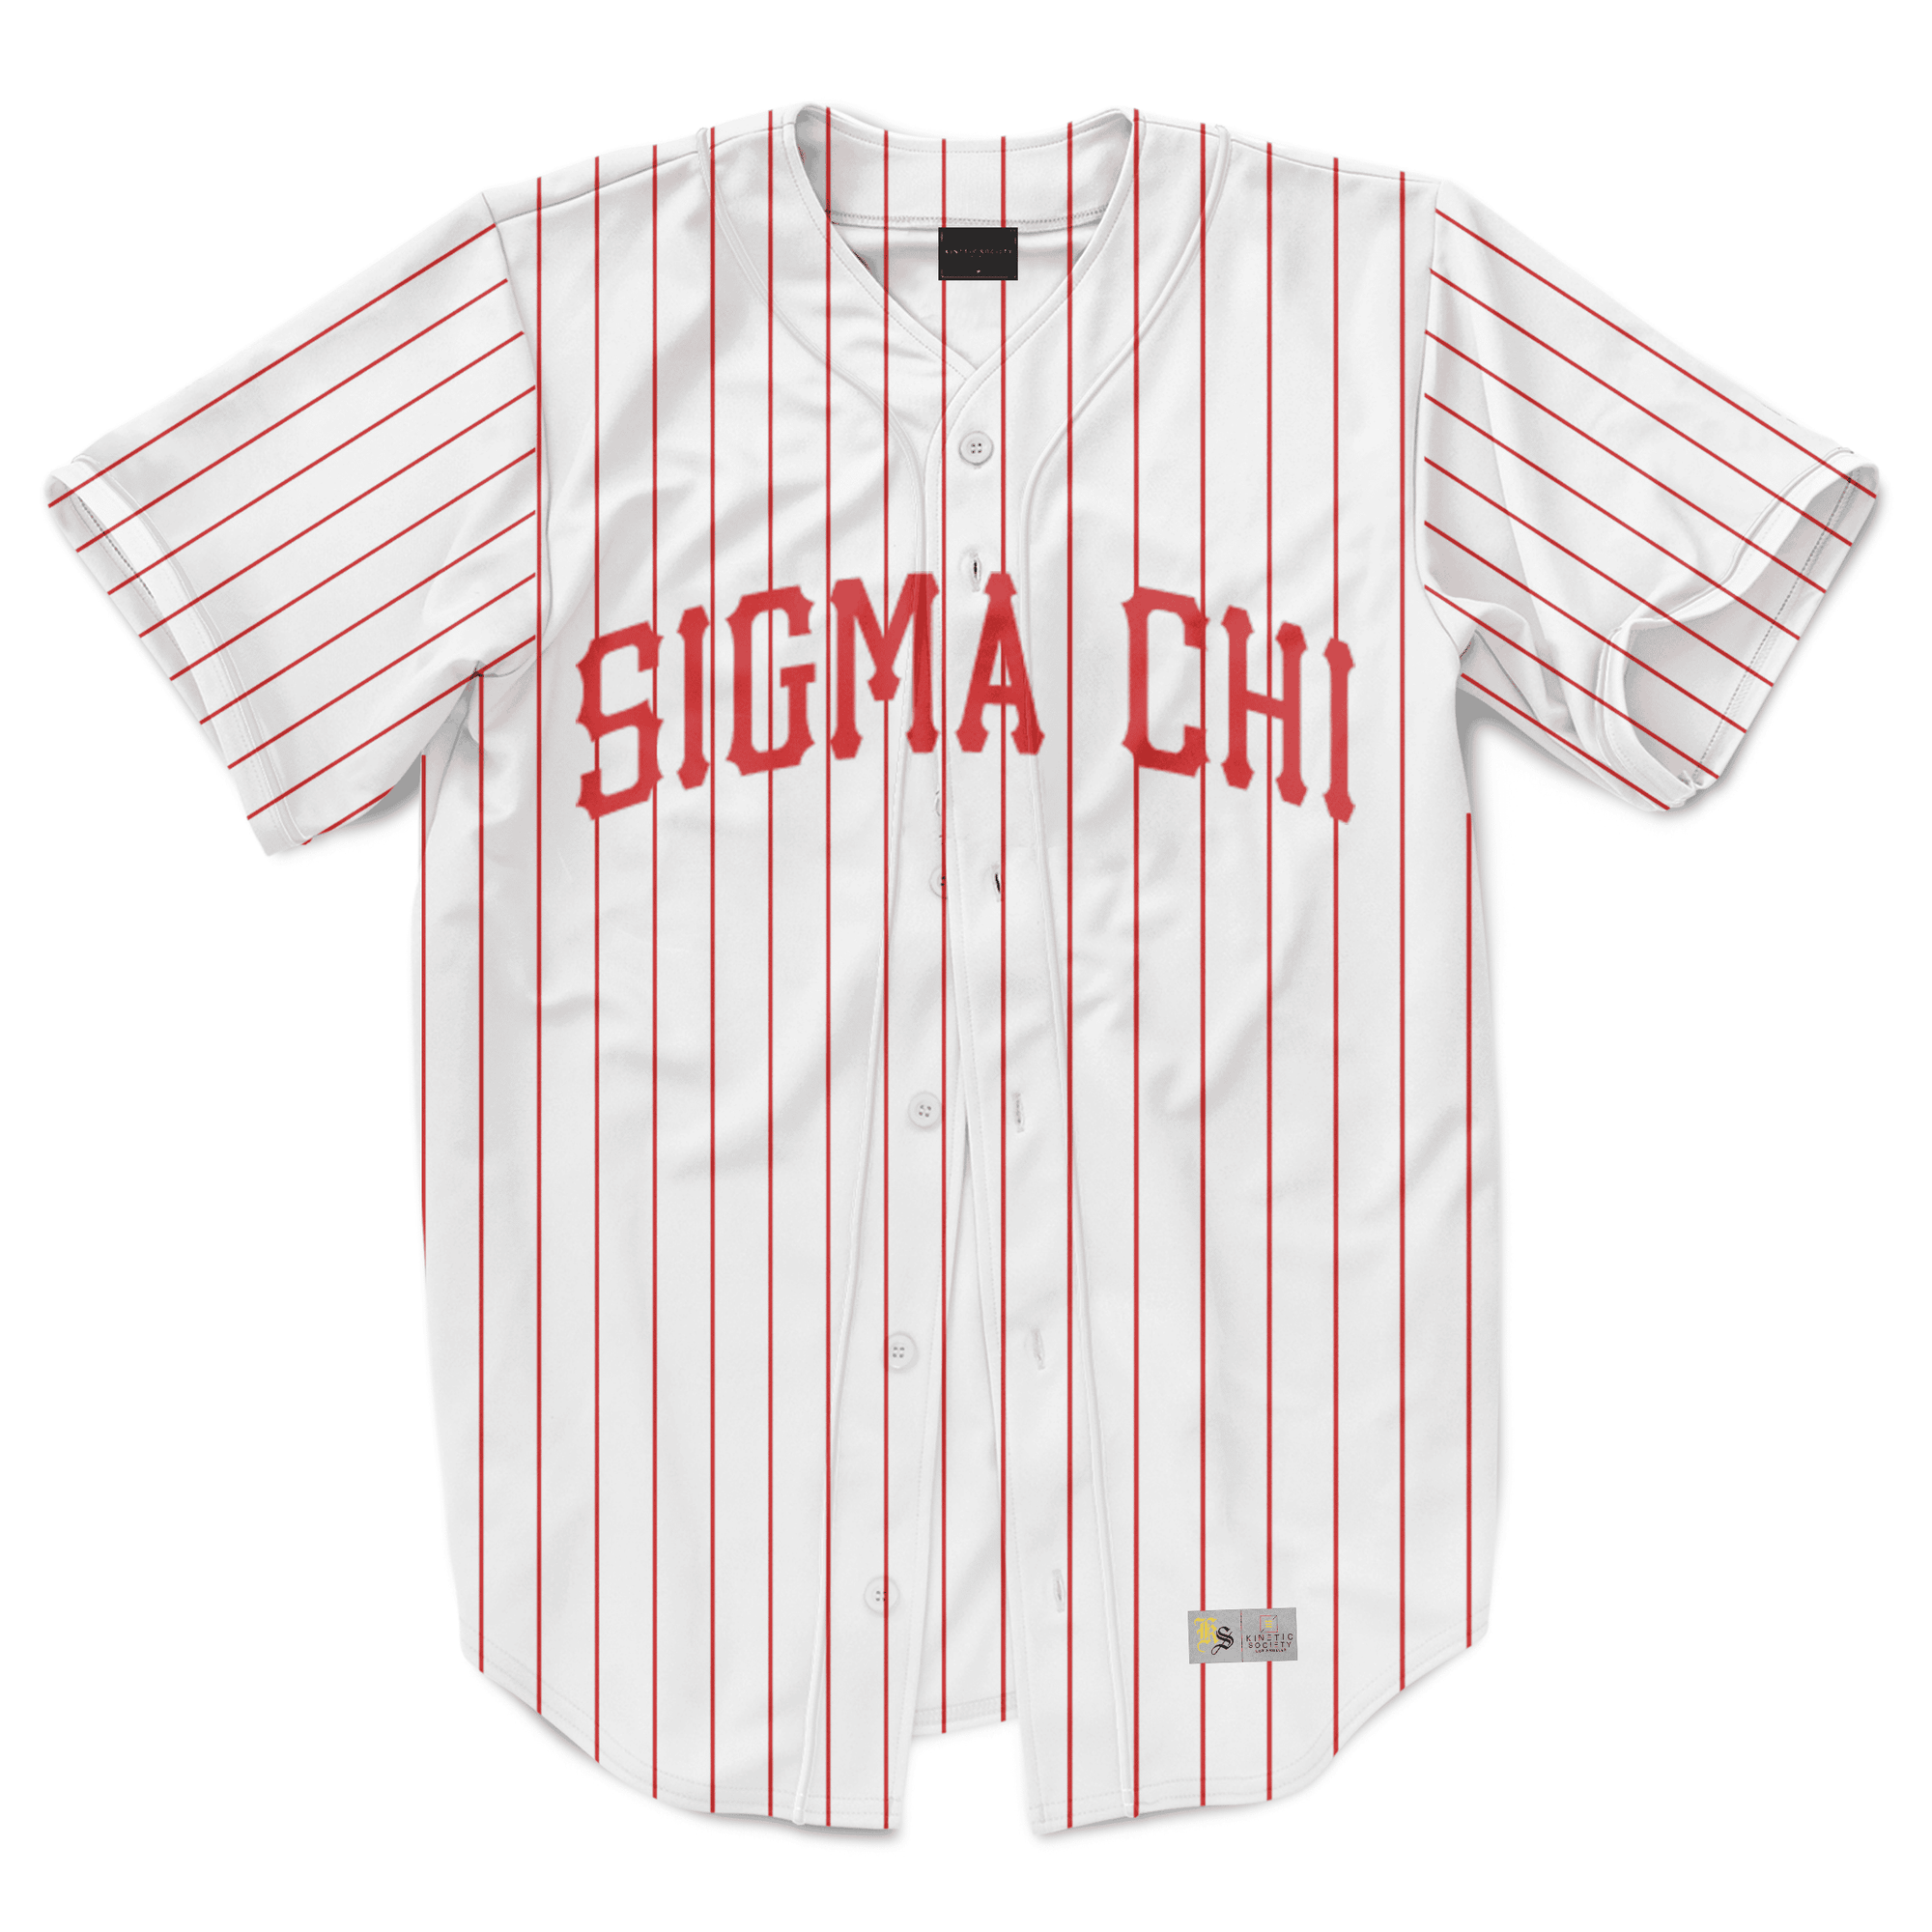 Sigma Chi - Red Pinstripe Baseball Jersey